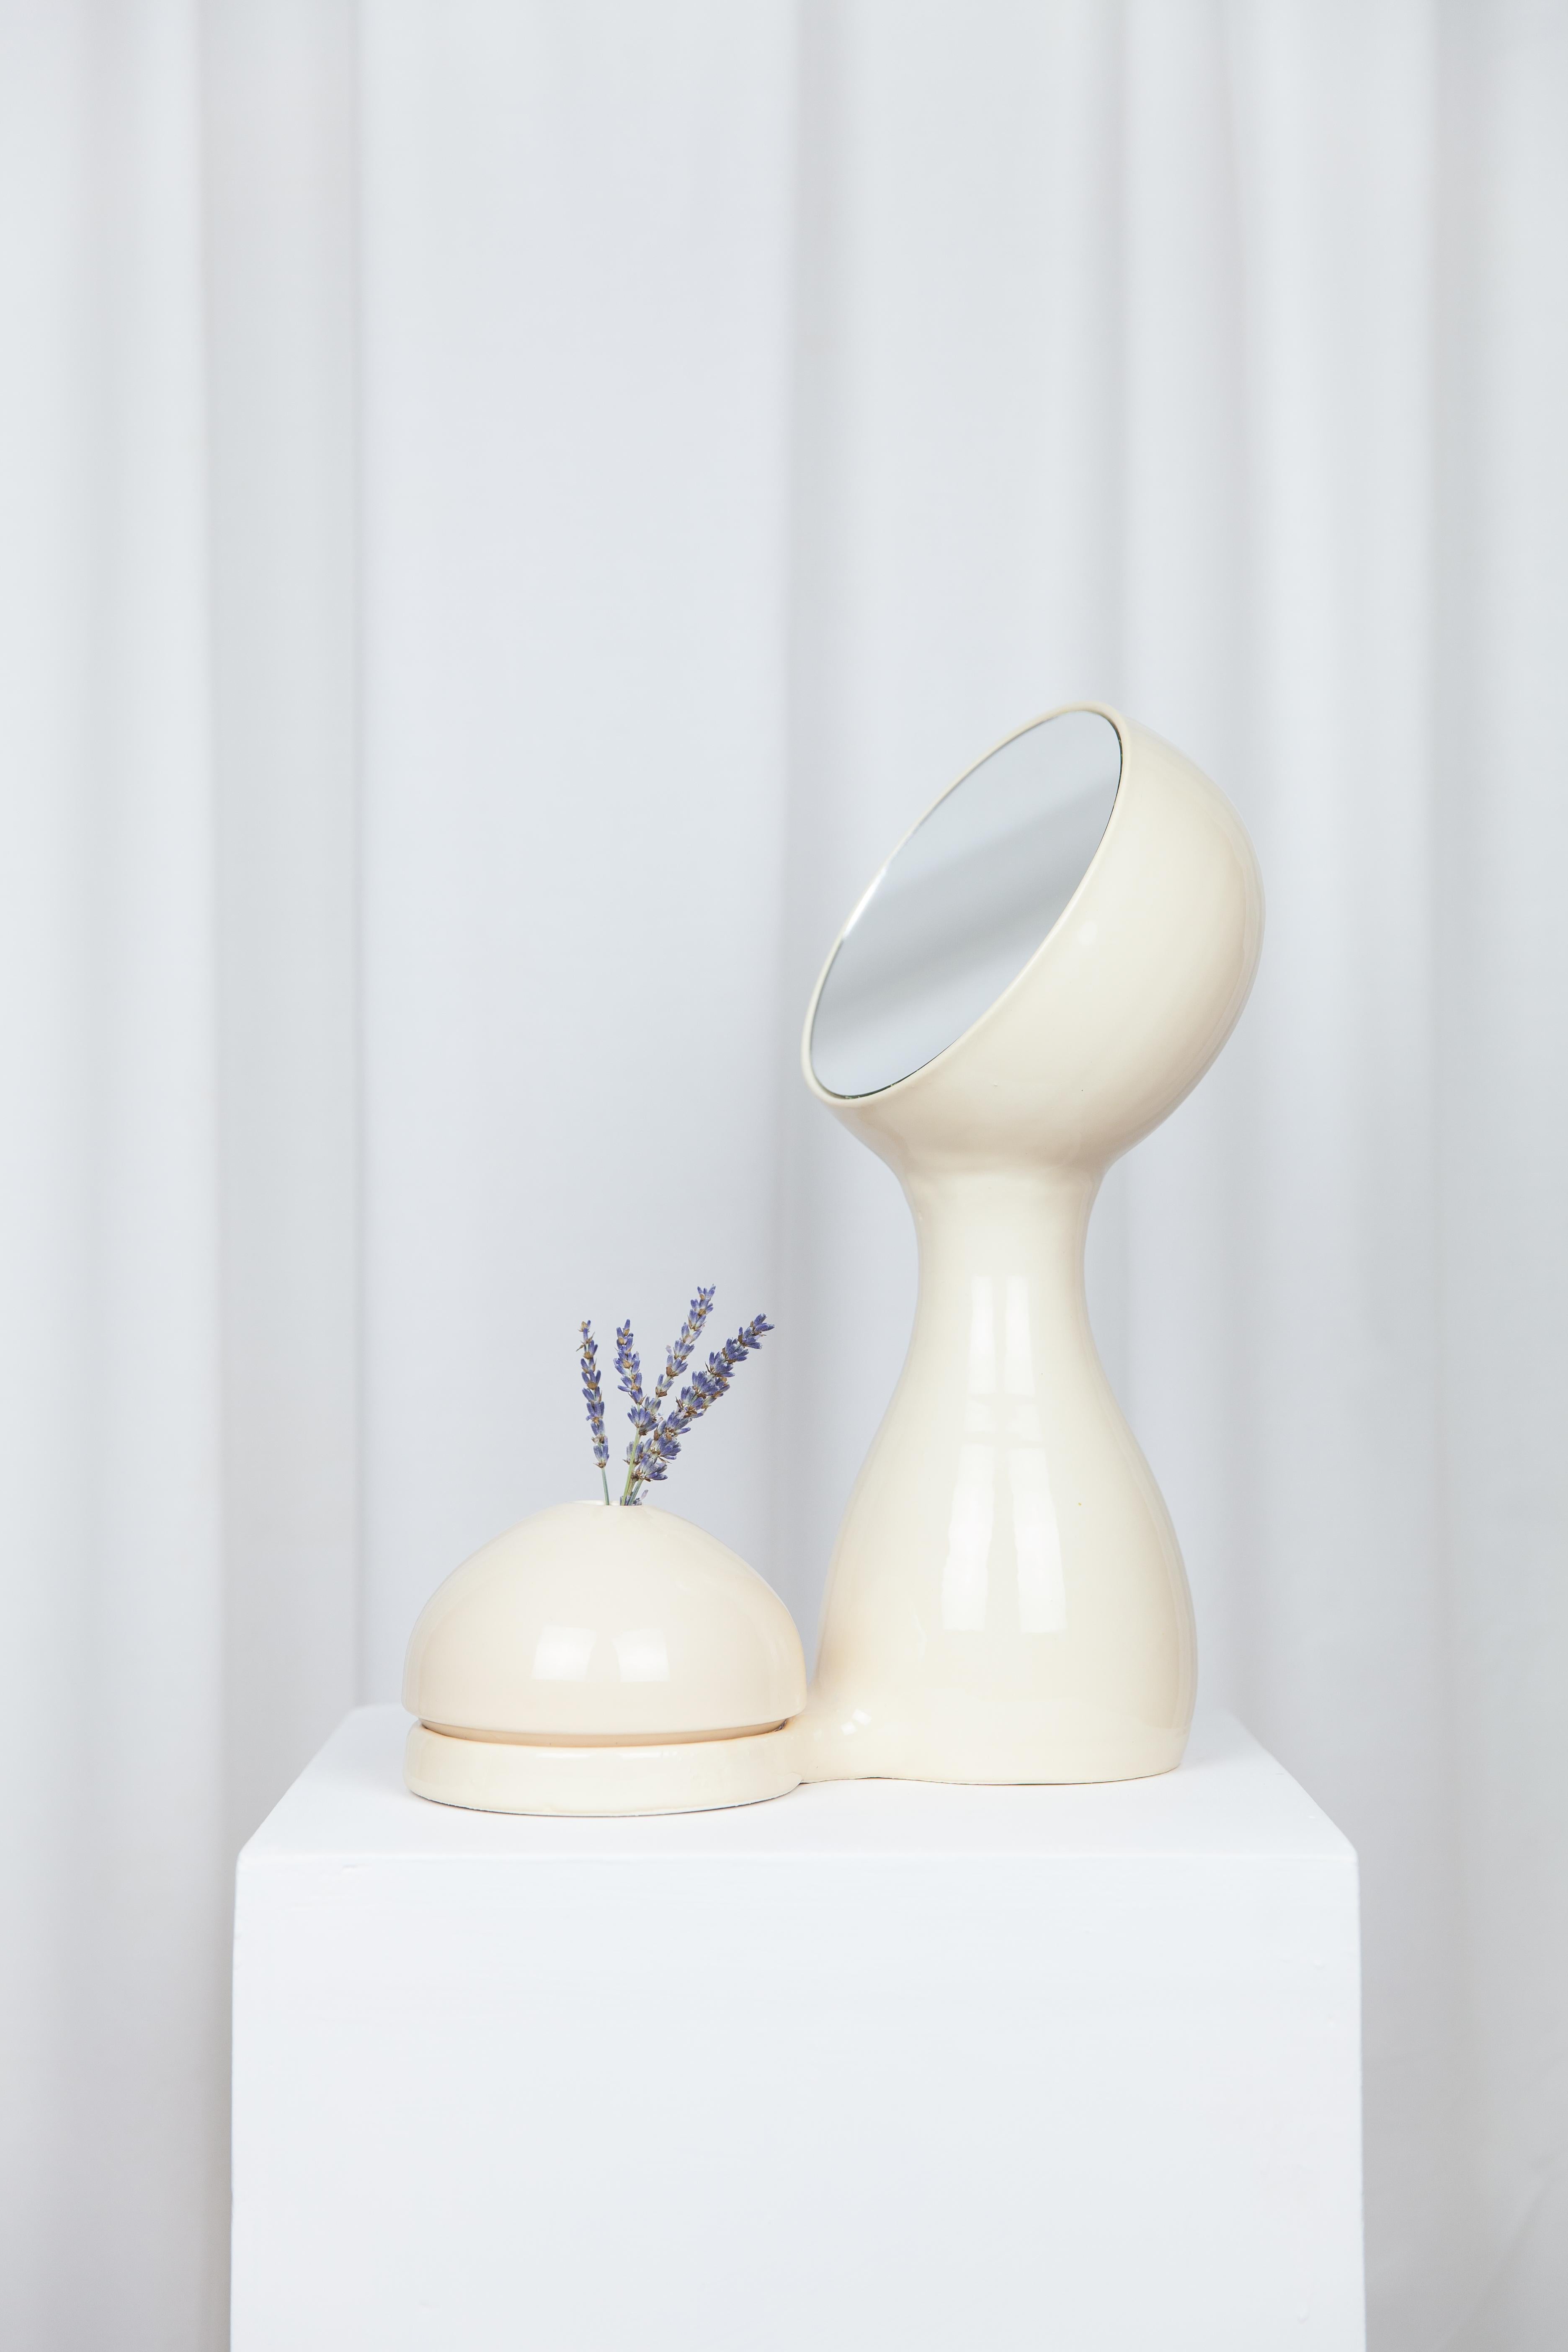 Post-Modern Wit Mirror + Vase Beige by Lola Mayeras